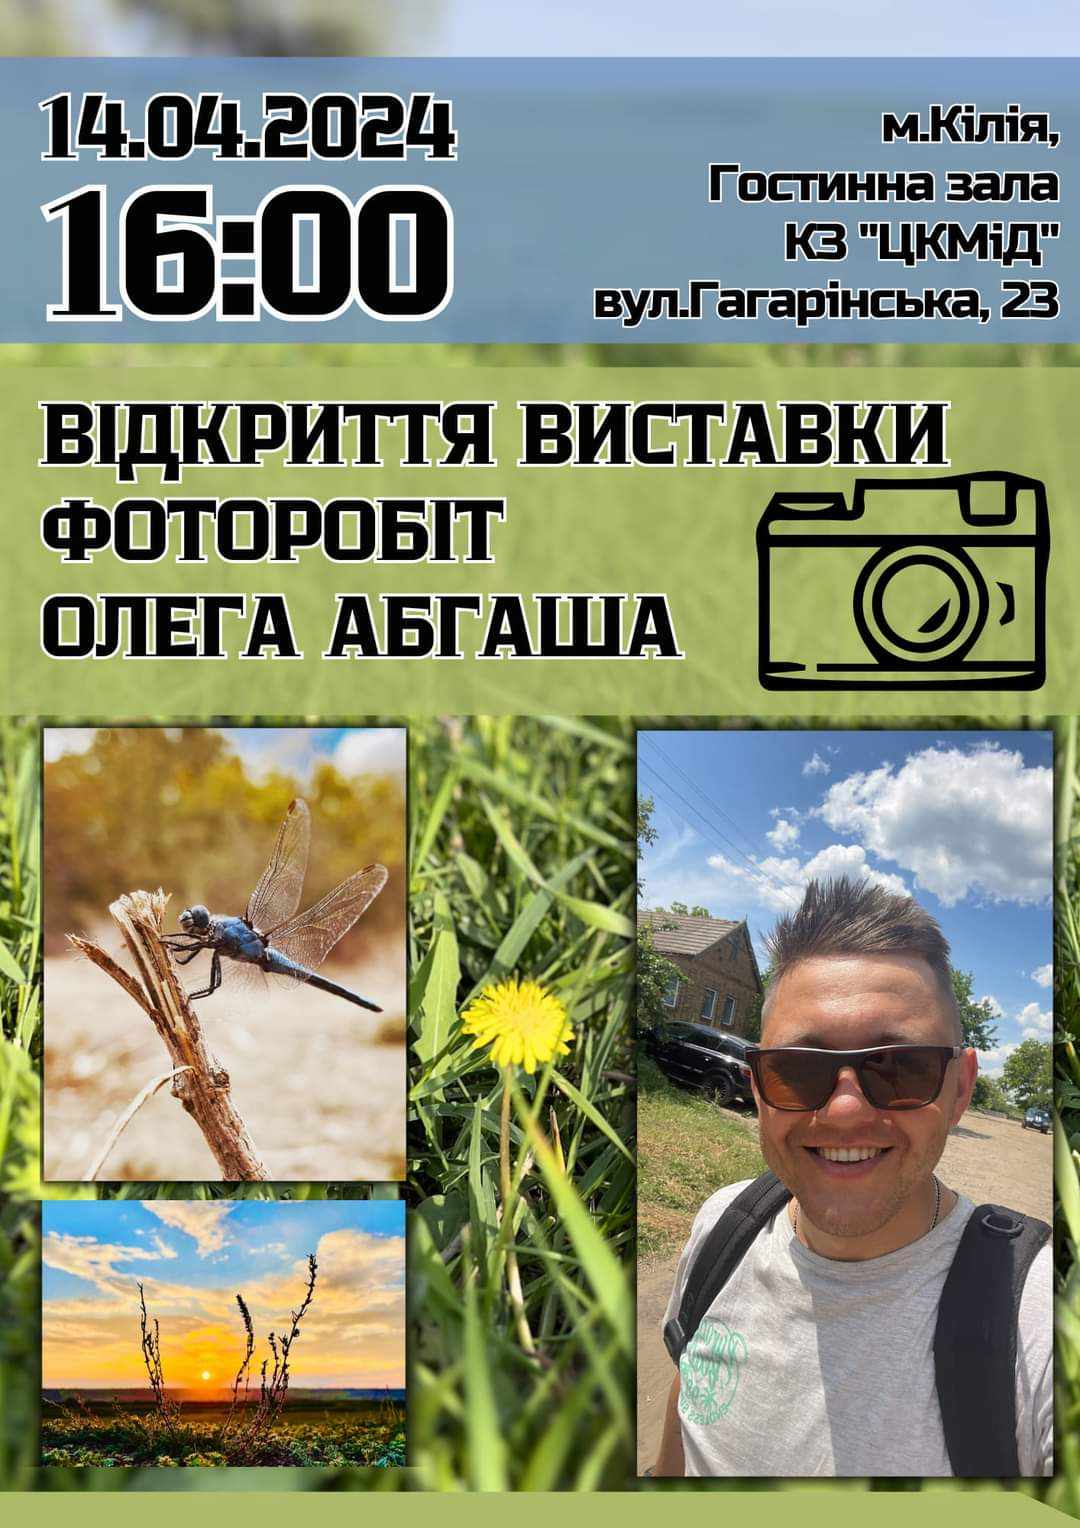 "Все будет пахнуть одуванчиками": в Кілії проведуть фотовиставку загиблого за Україну містянина Олега Абгаша